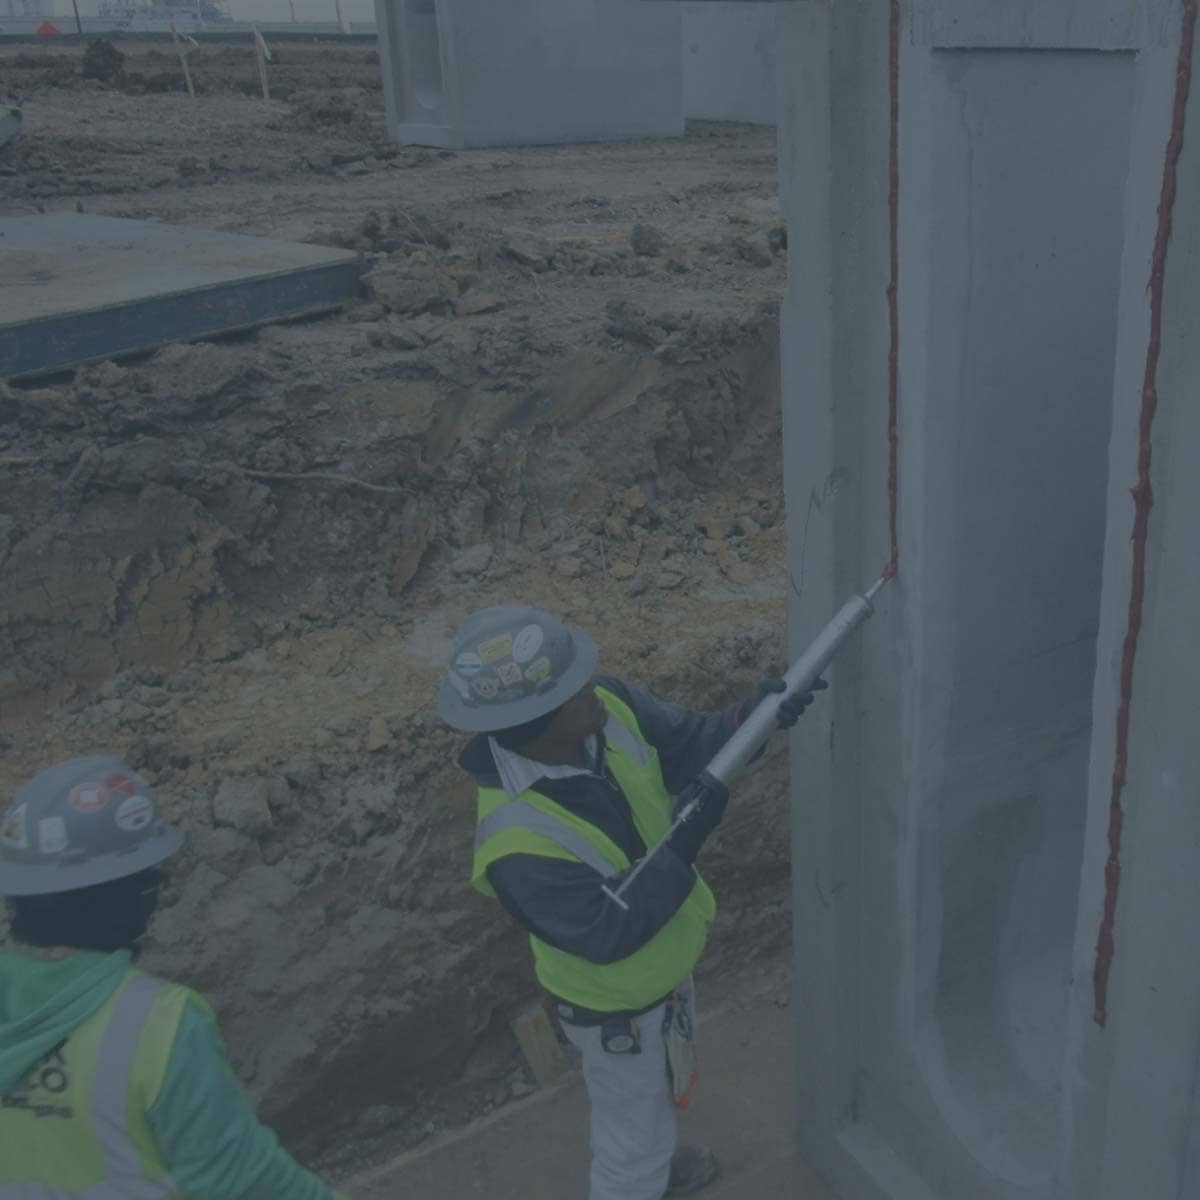 Common Precast Concrete Joint Sealants